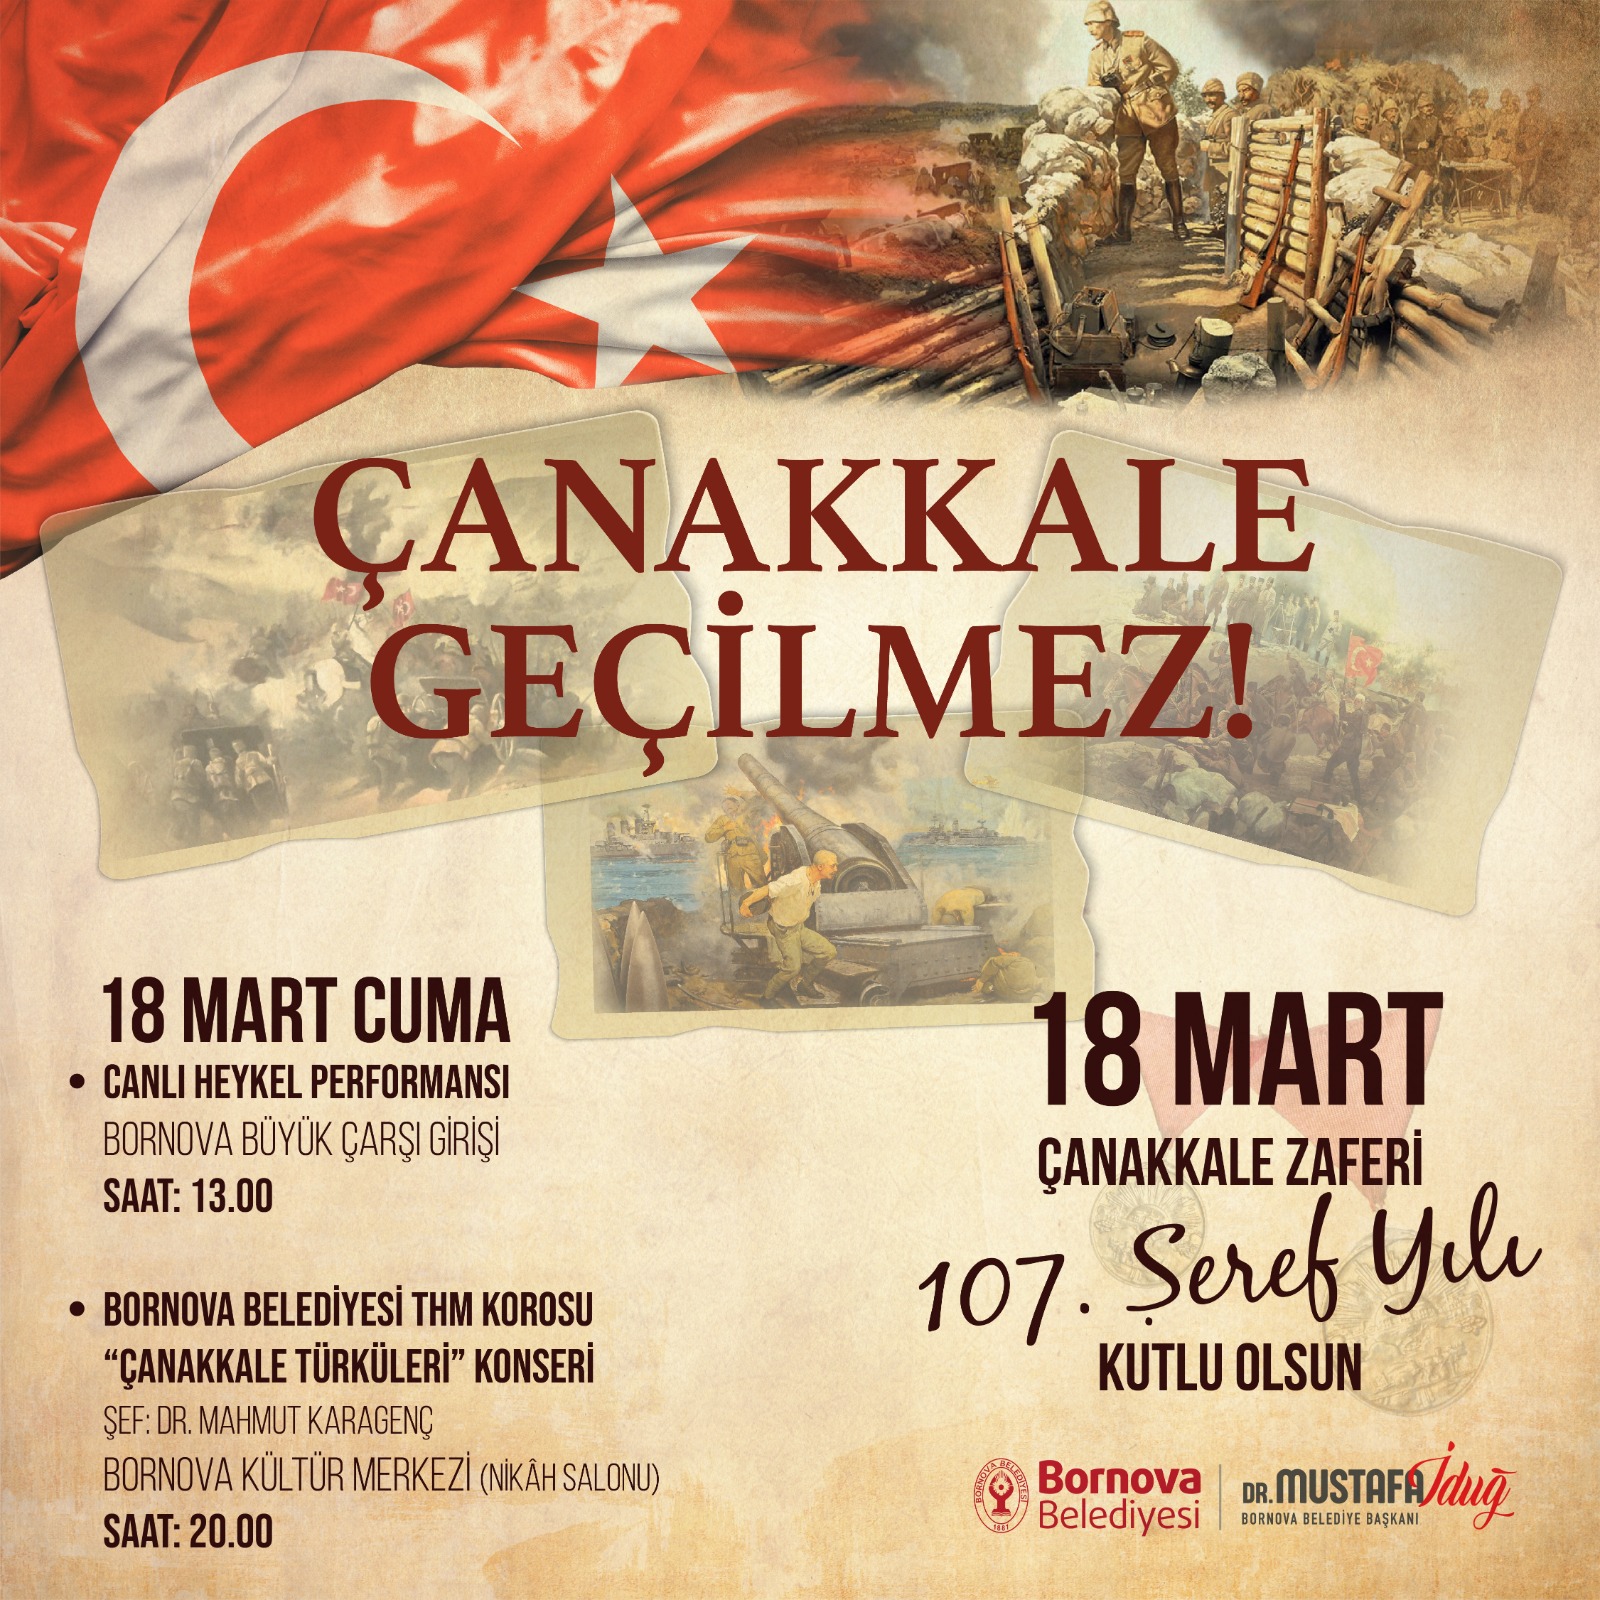 Bornova Belediyesi, 18 Mart Şehitleri Anma Günü ve Çanakkale Deniz Zaferi’nin 107. yılını düzenlediği etkinliklerle kutlayacak.